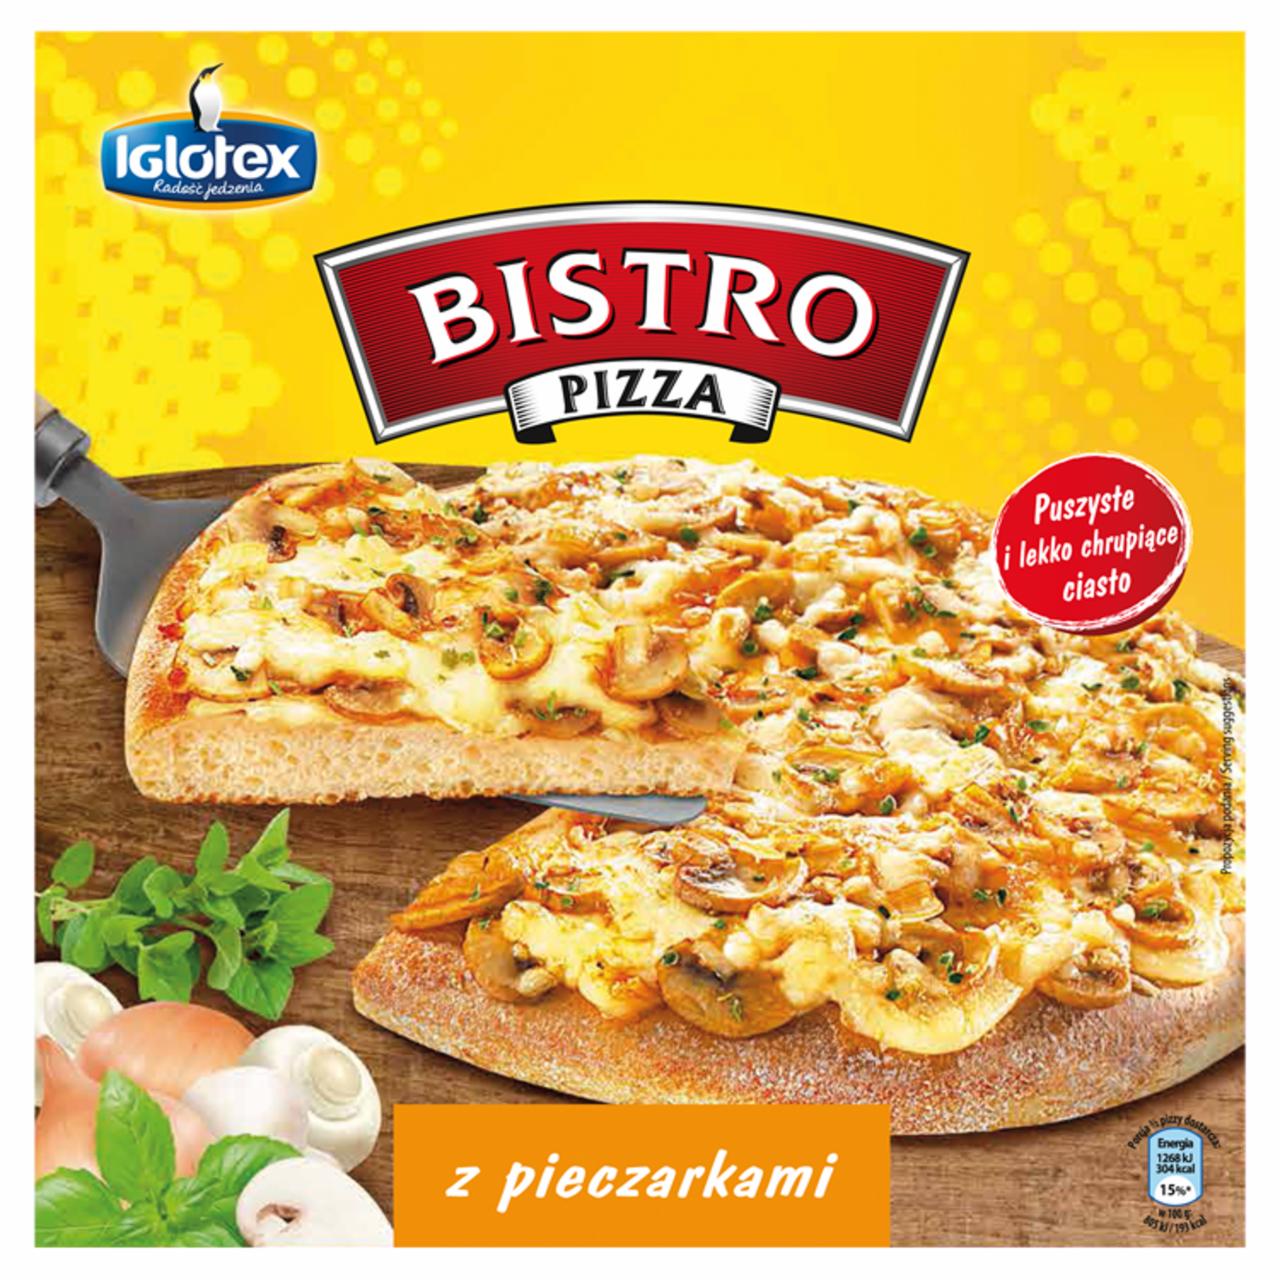 Zdjęcia - Bistro Pizza z pieczarkami 315 g